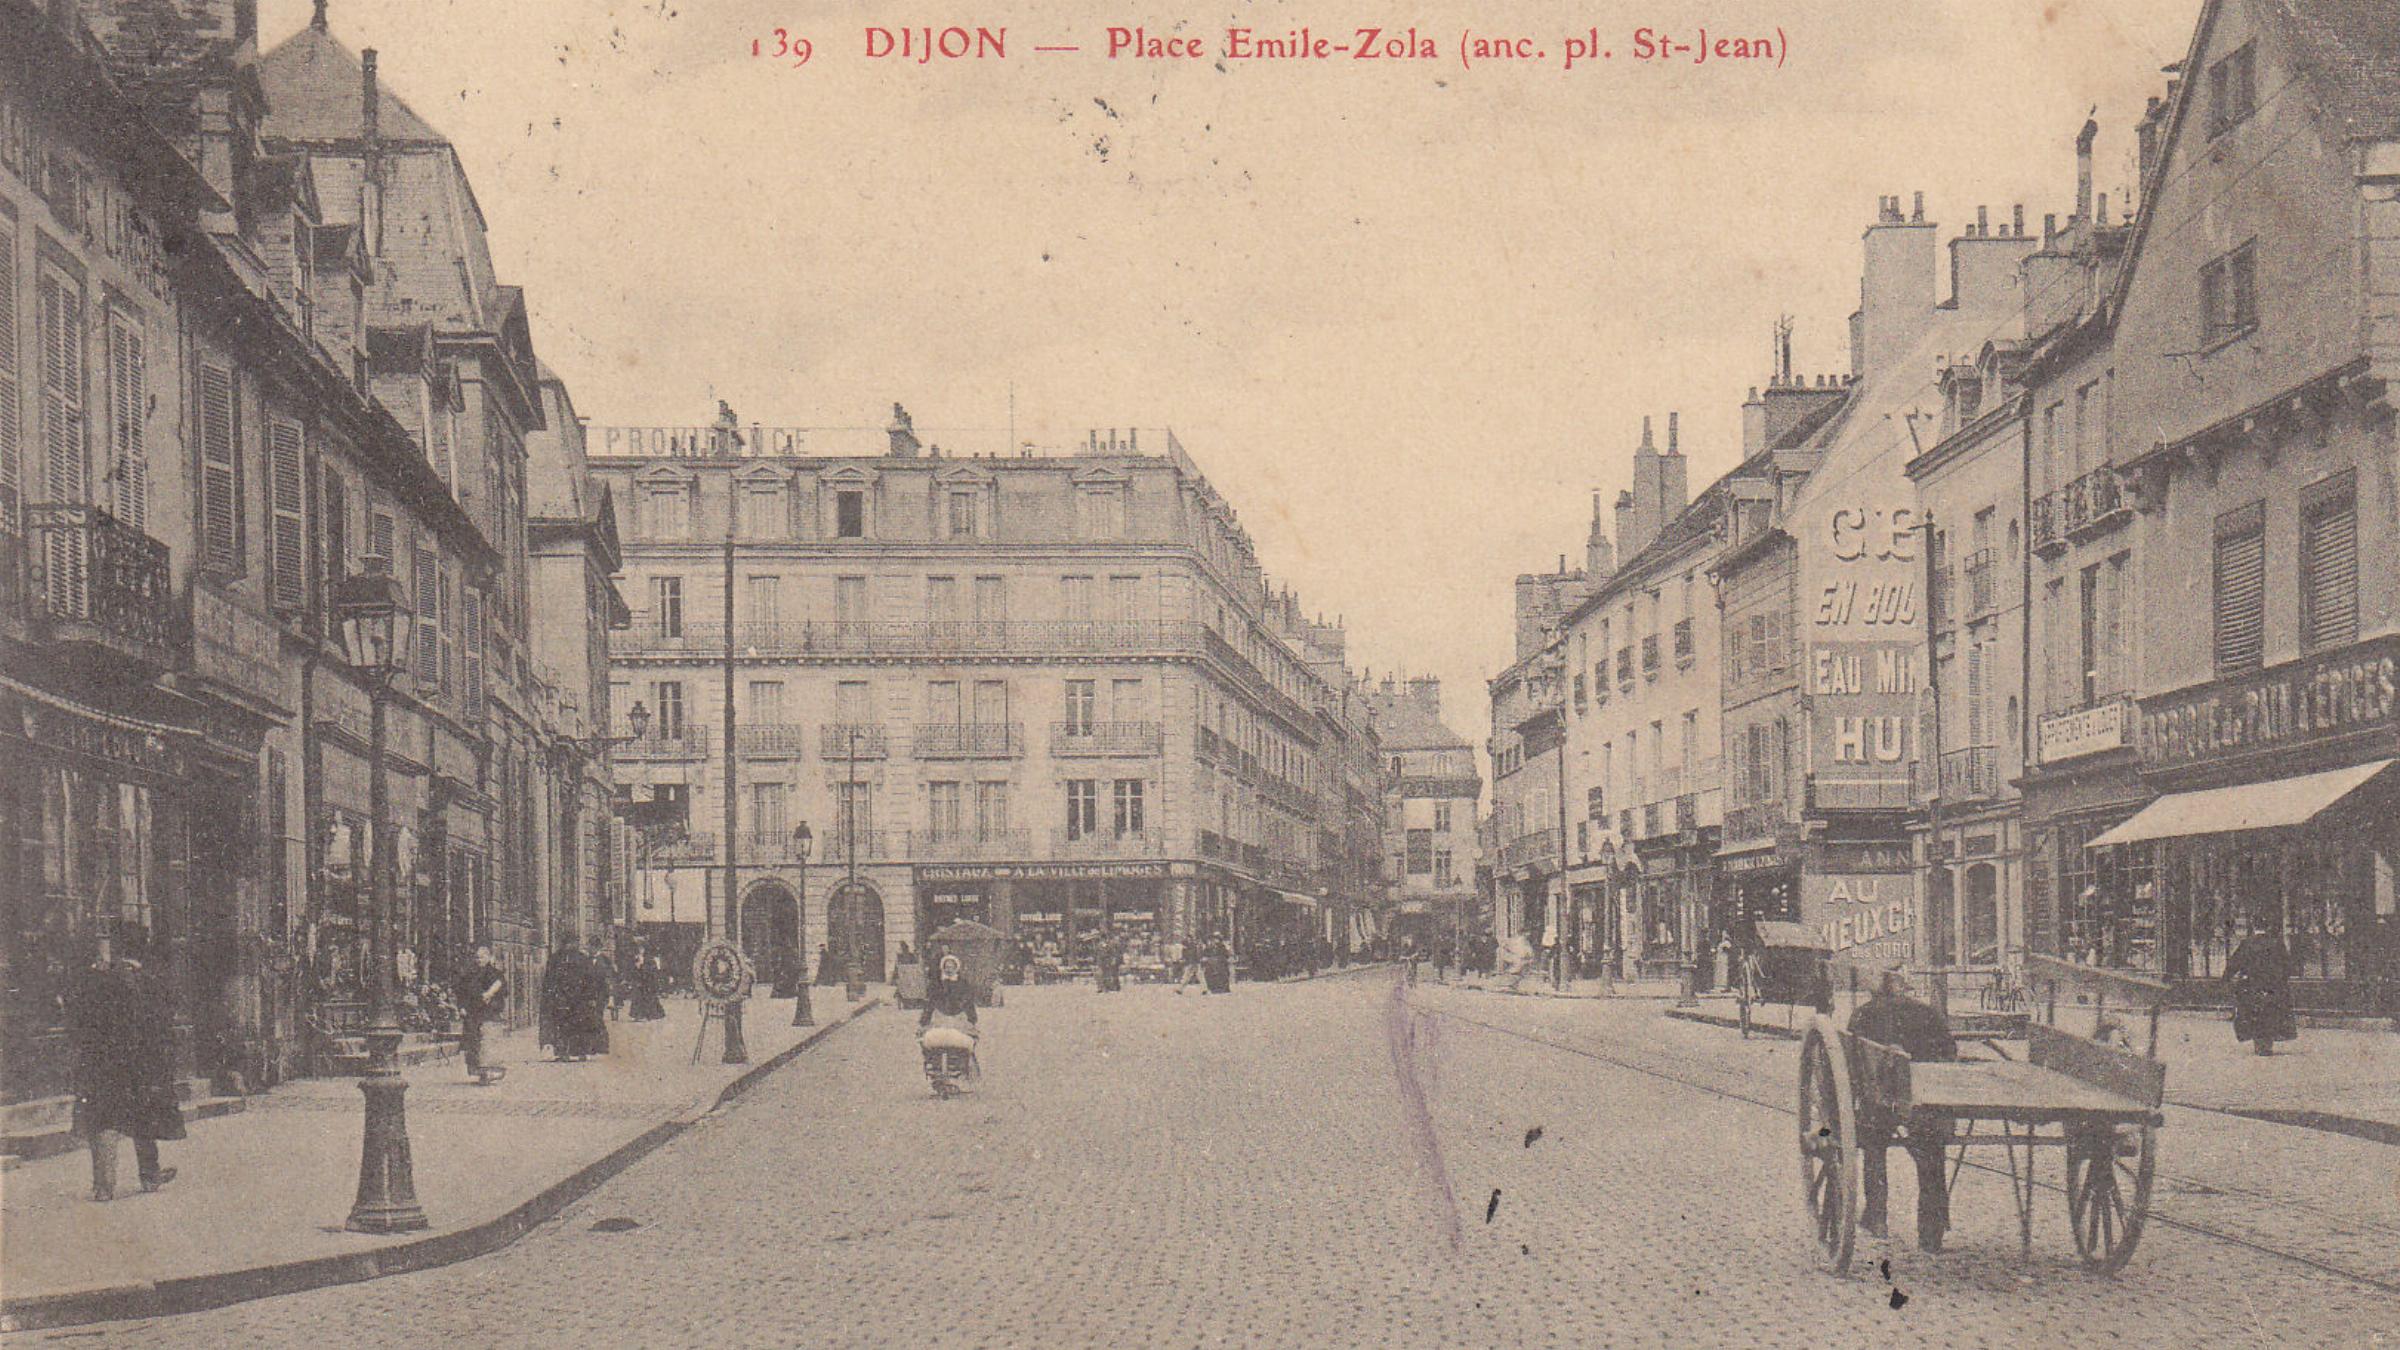 Dijon à travers le temps - La place Bossuet